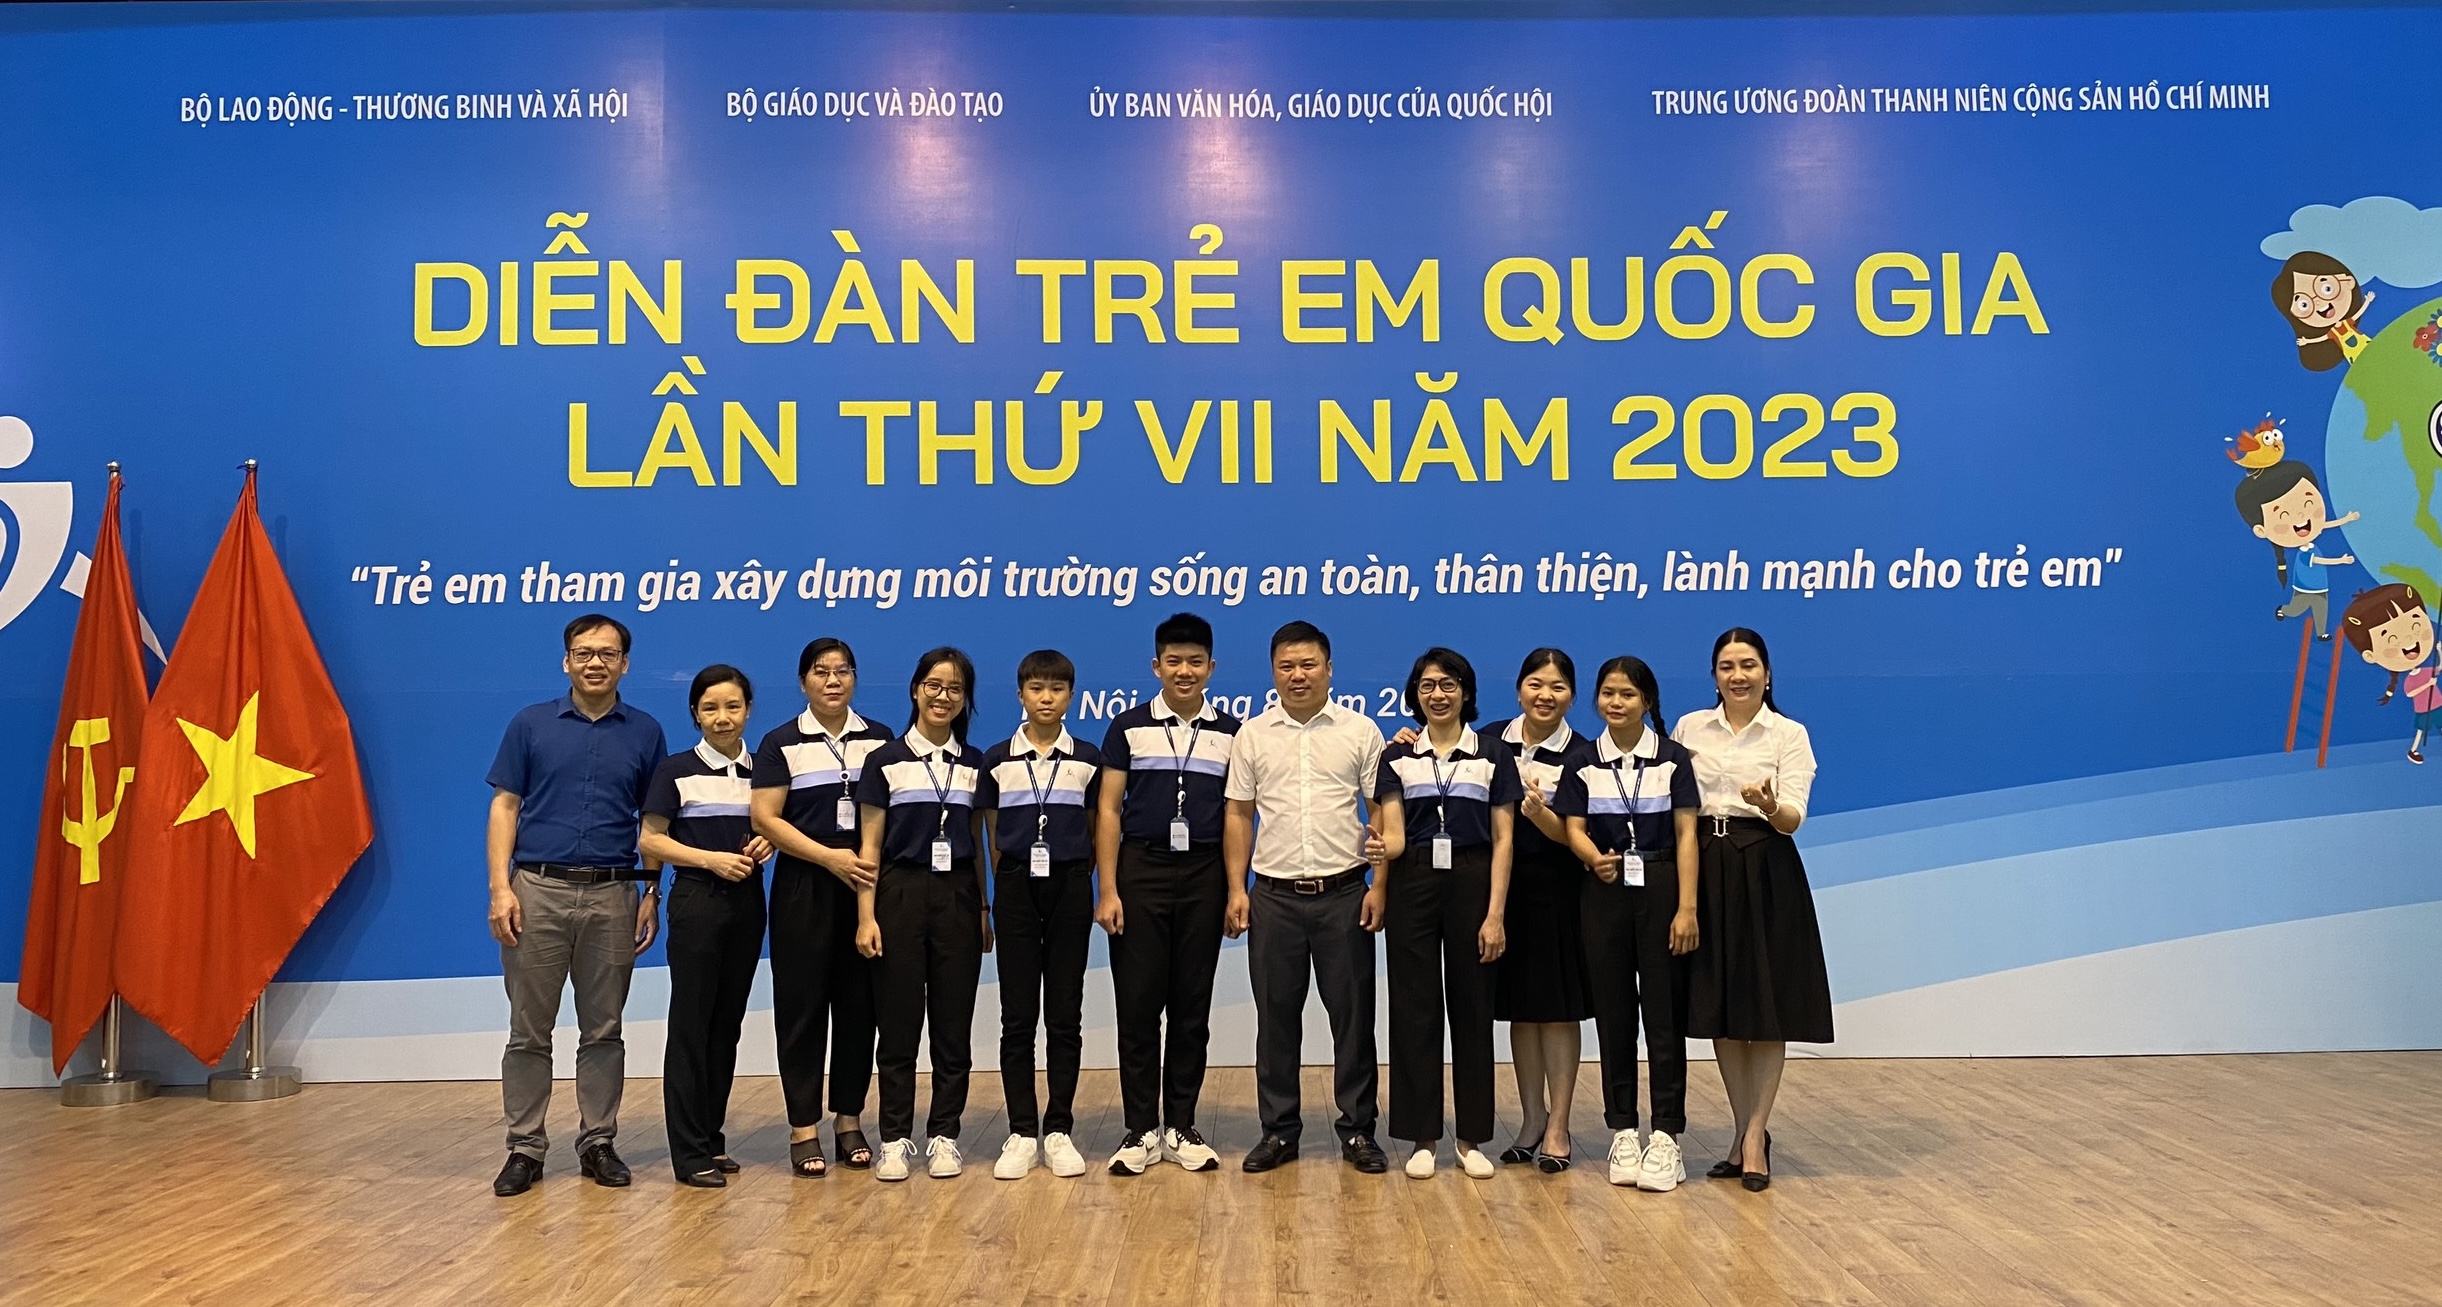 Đoàn đại biểu tỉnh Quảng Bình tham dự Diễn đàn trẻ em quốc gia năm 2023.